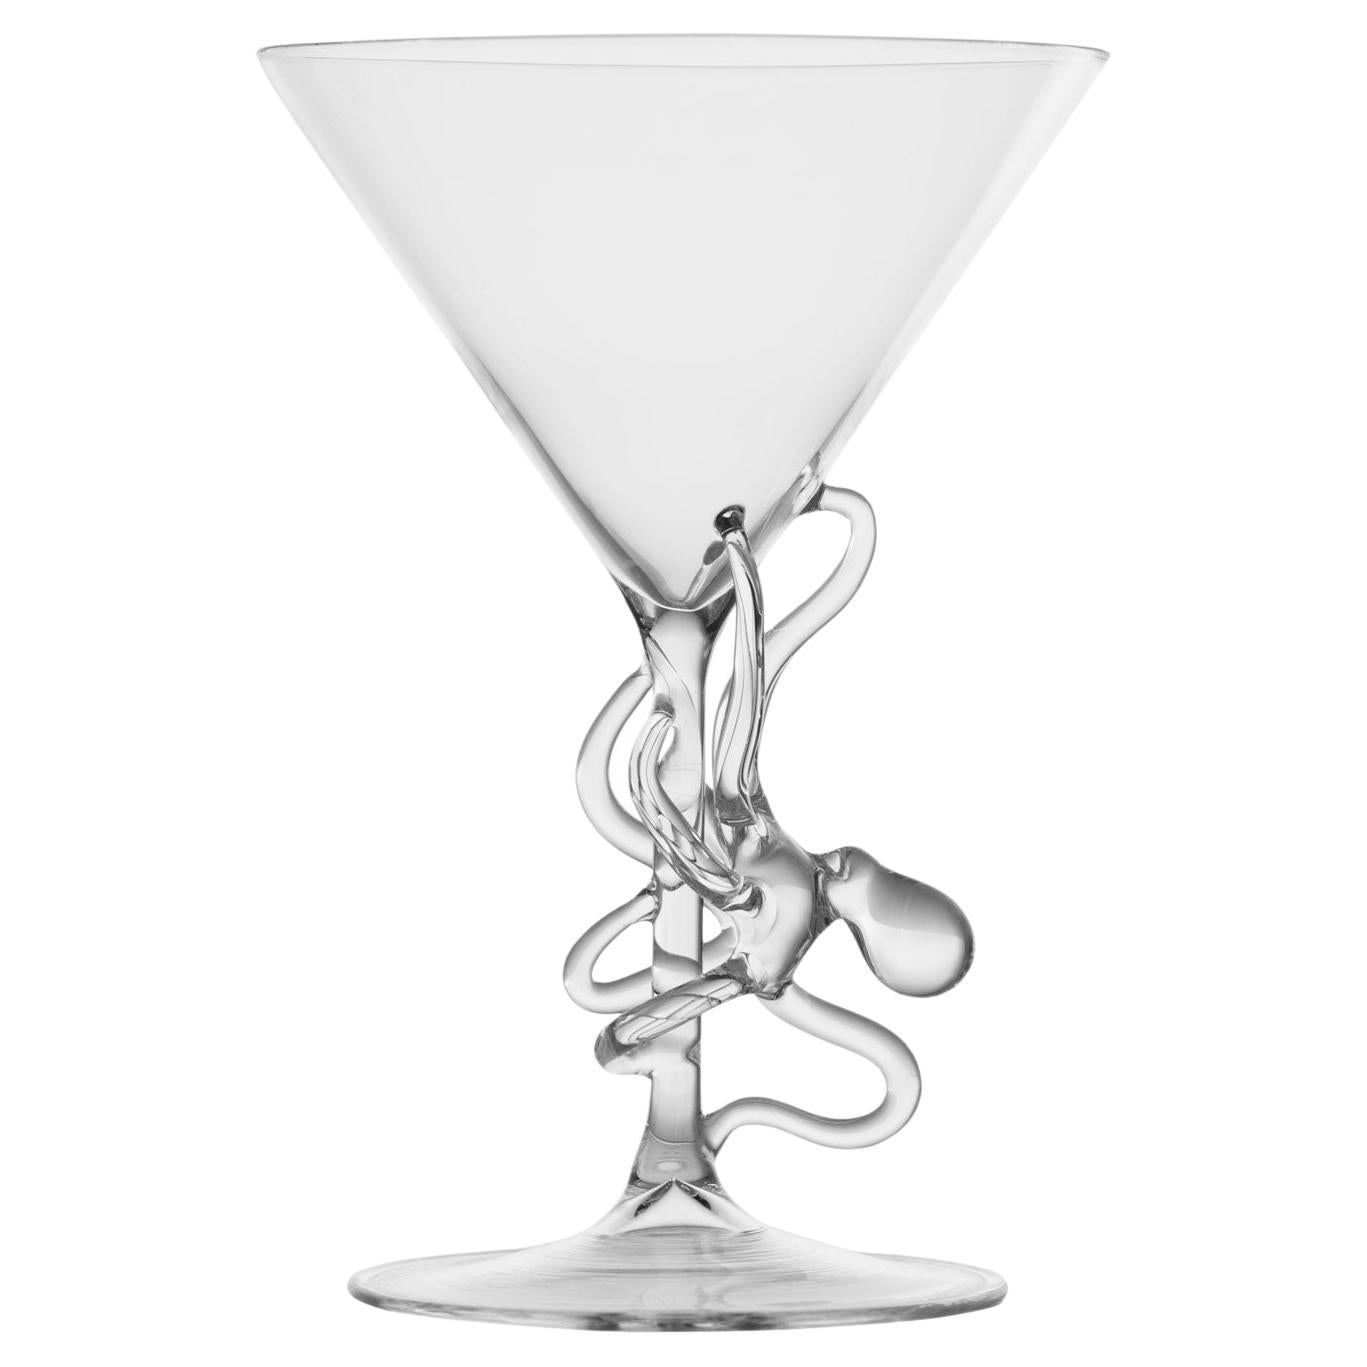 Hand Blown Polpo Martini Glass by Simone Crestani